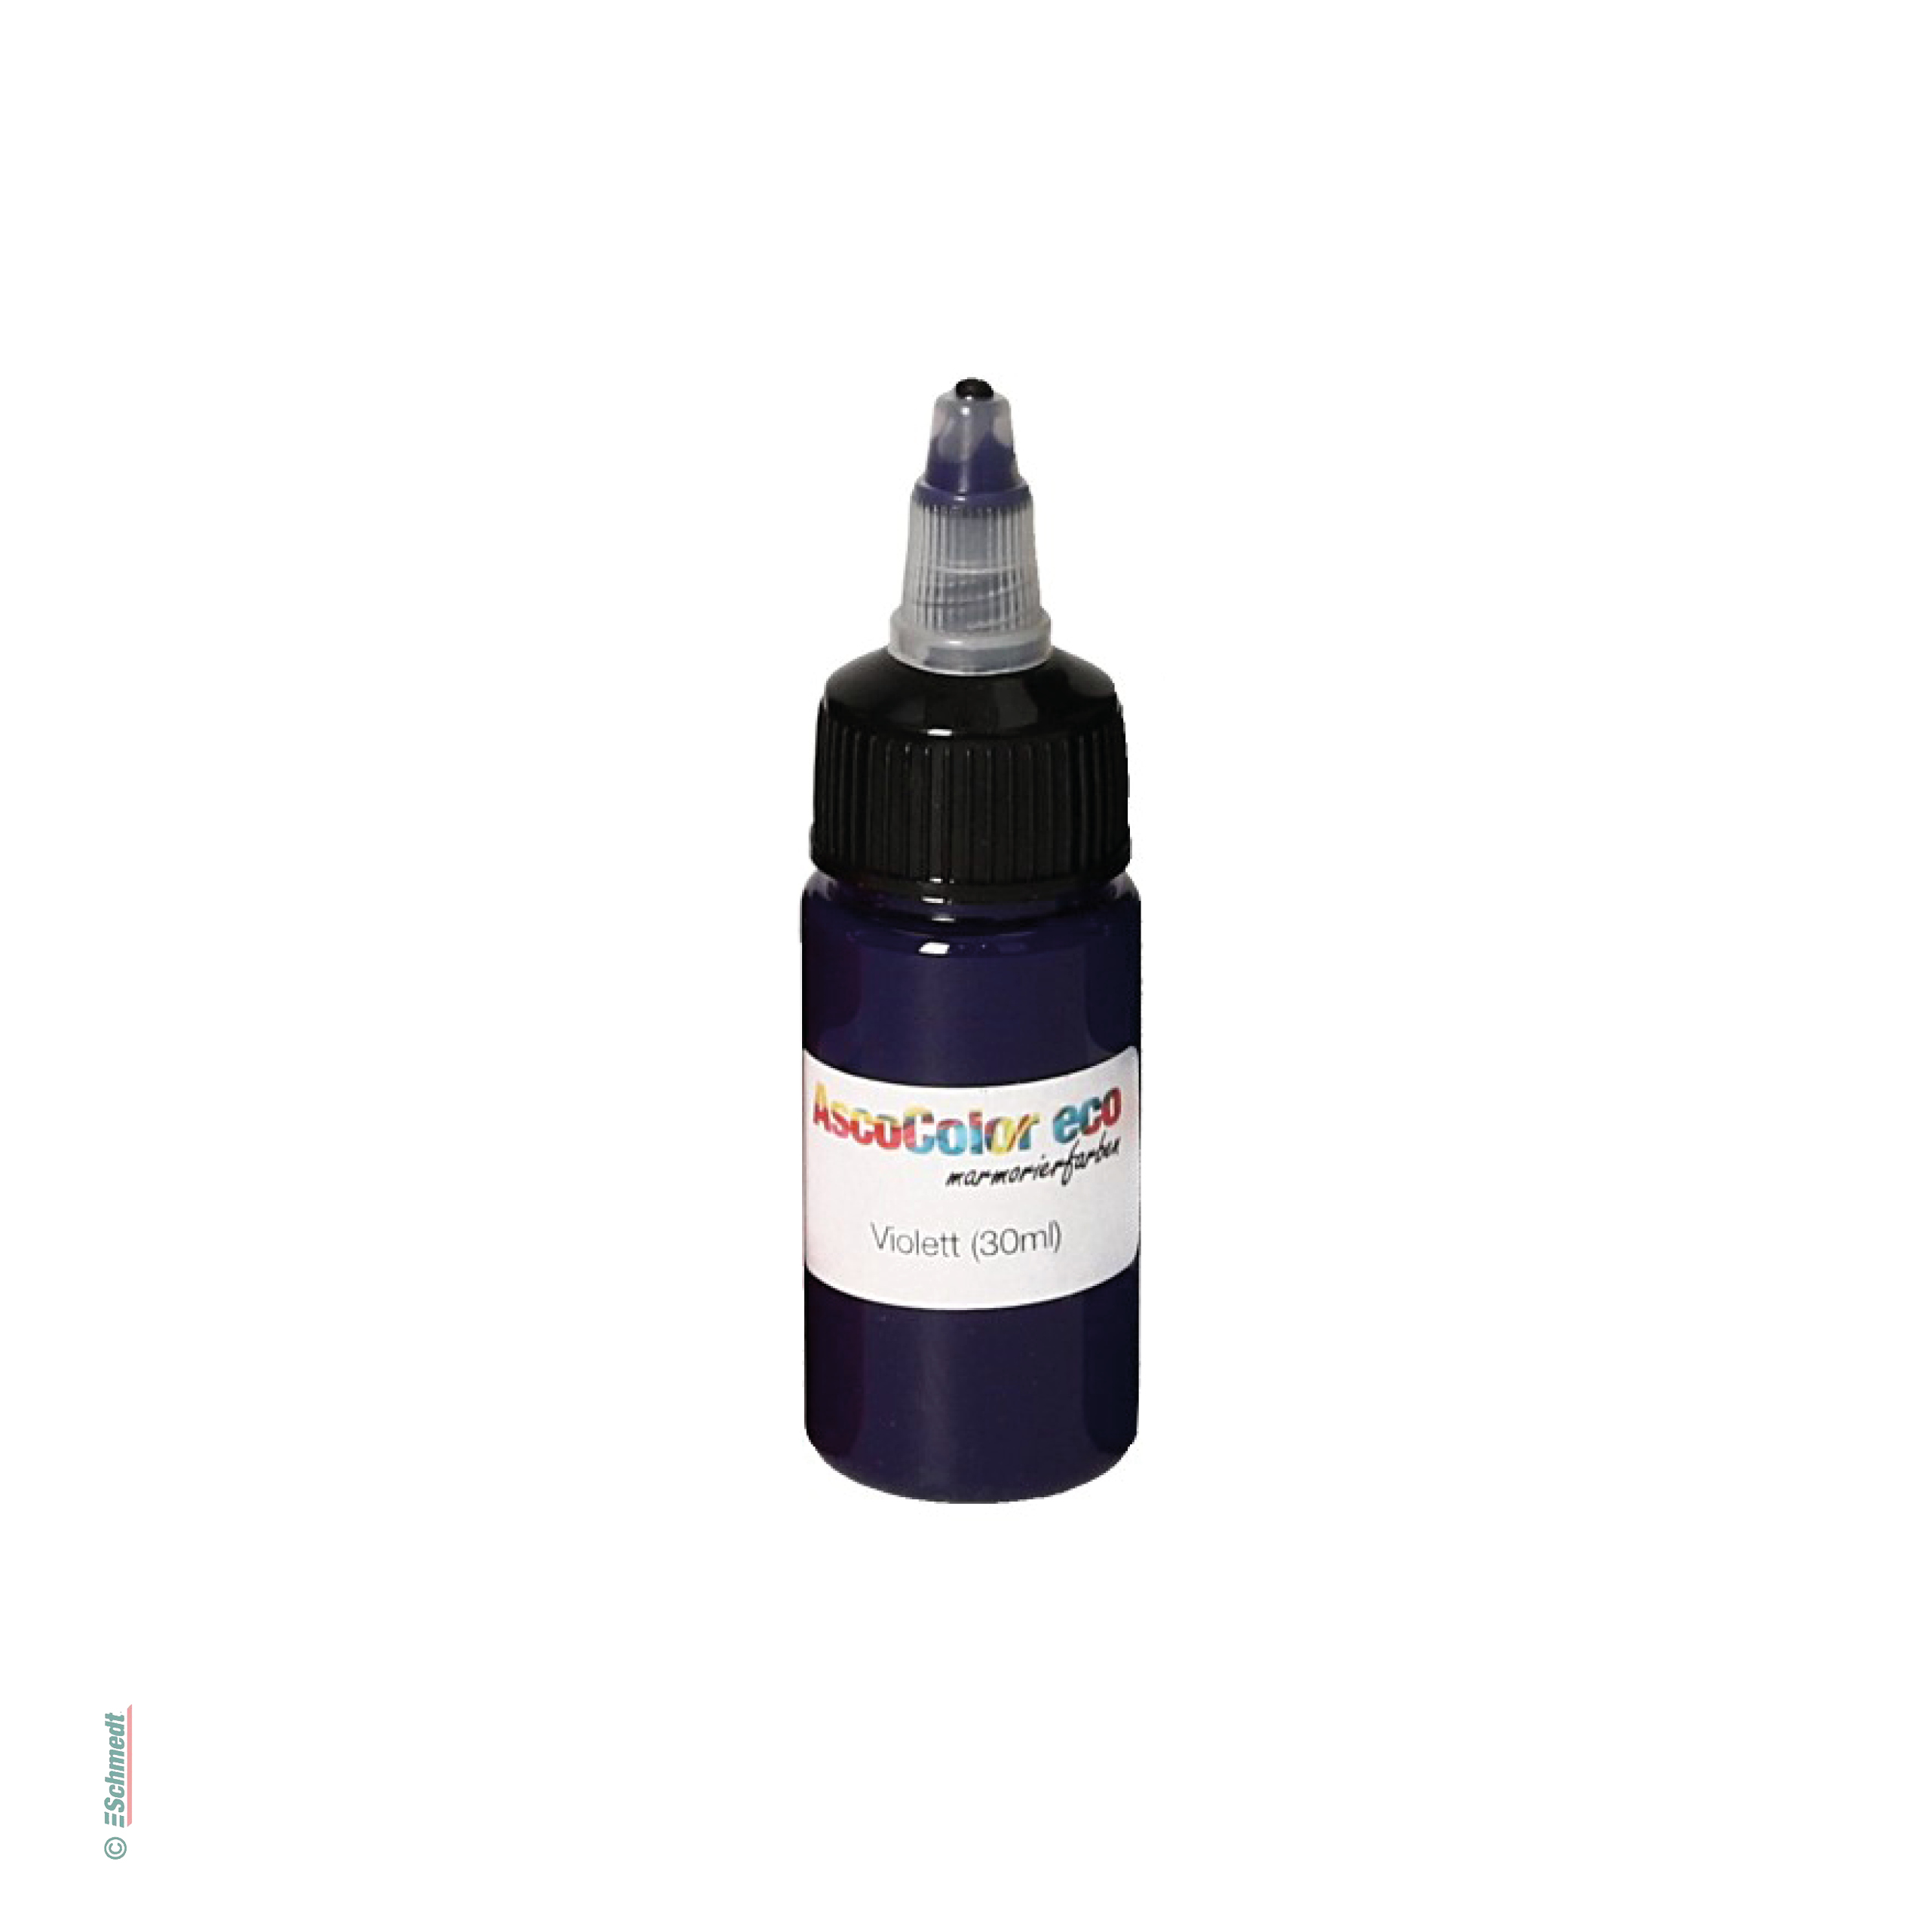 AscoColor eco - Pintura para marmolar - Color 104 - violeta - Contenido Botella / 30 ml - Aplicación: para crear sus propios papeles marmola...